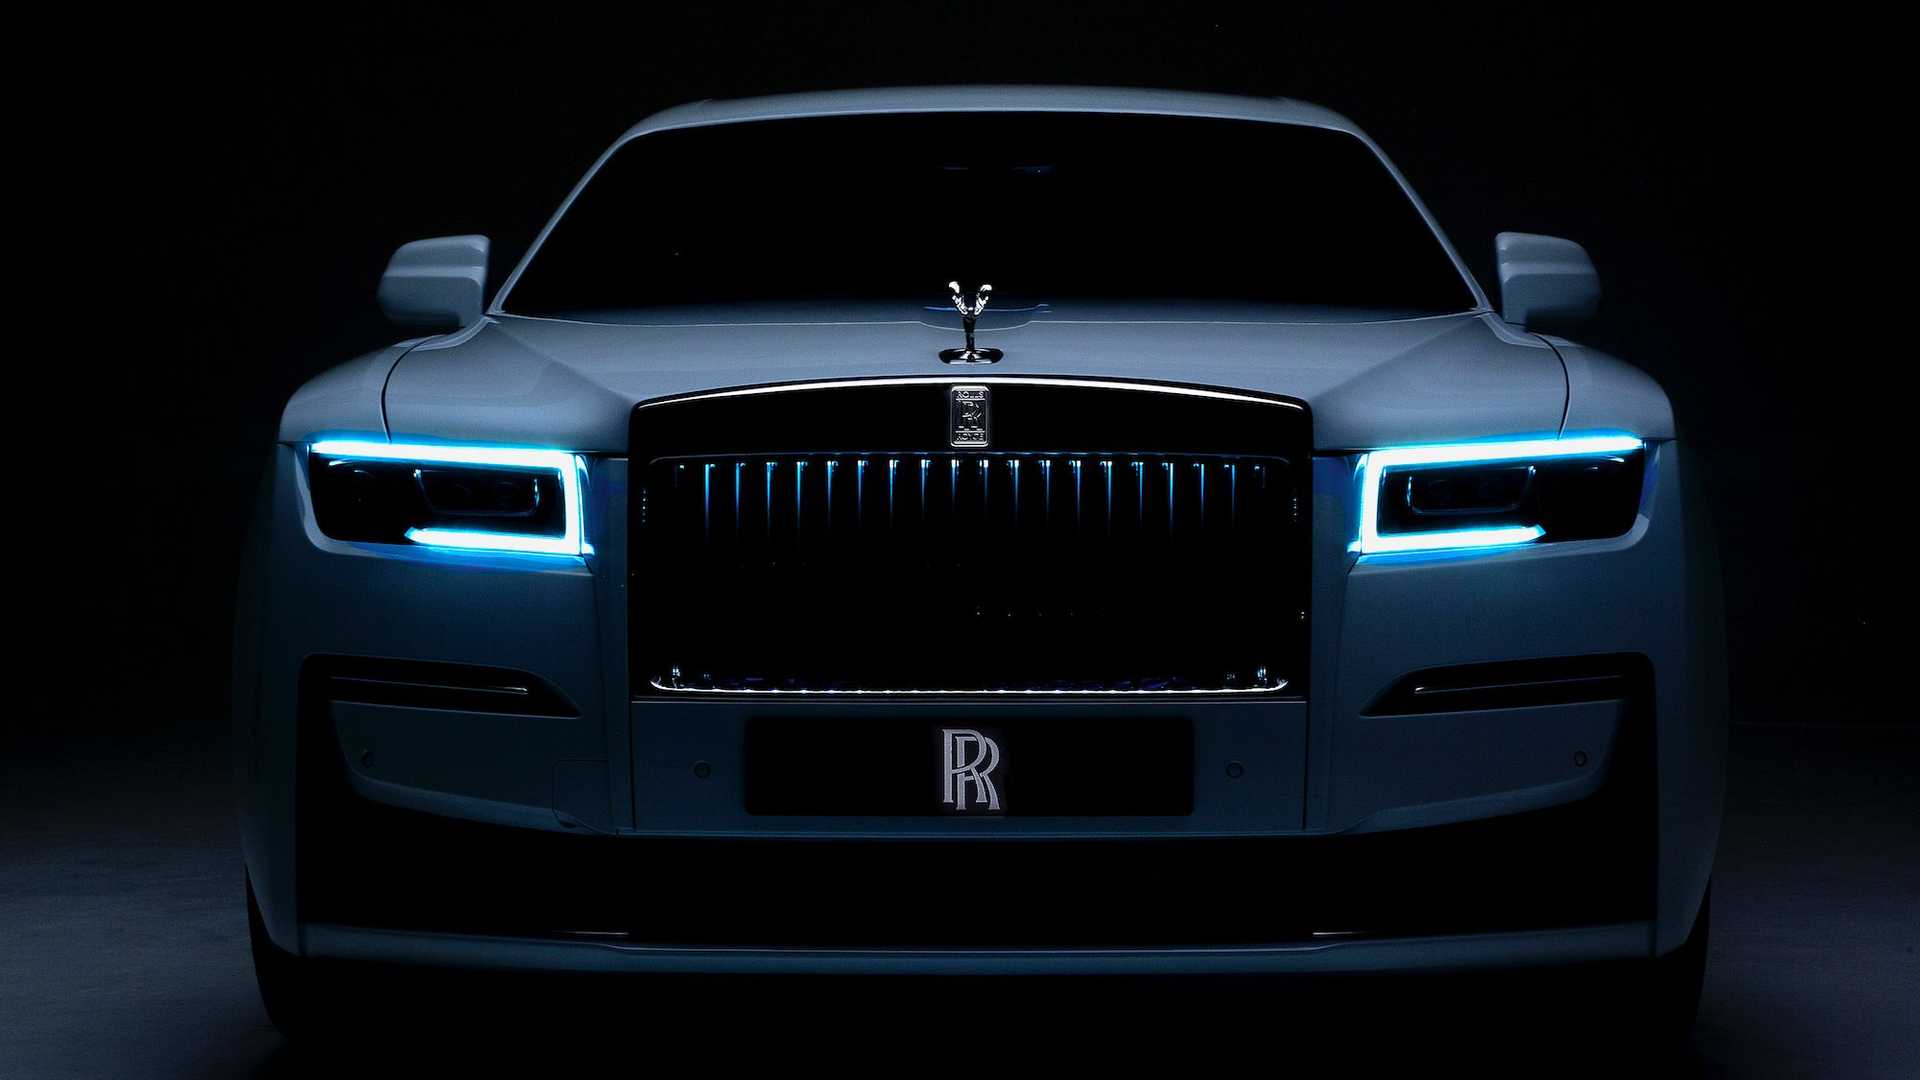 Американский автодилер впервые продал Rolls Royce Ghost за биткоины. Заглавный коллаж новости.